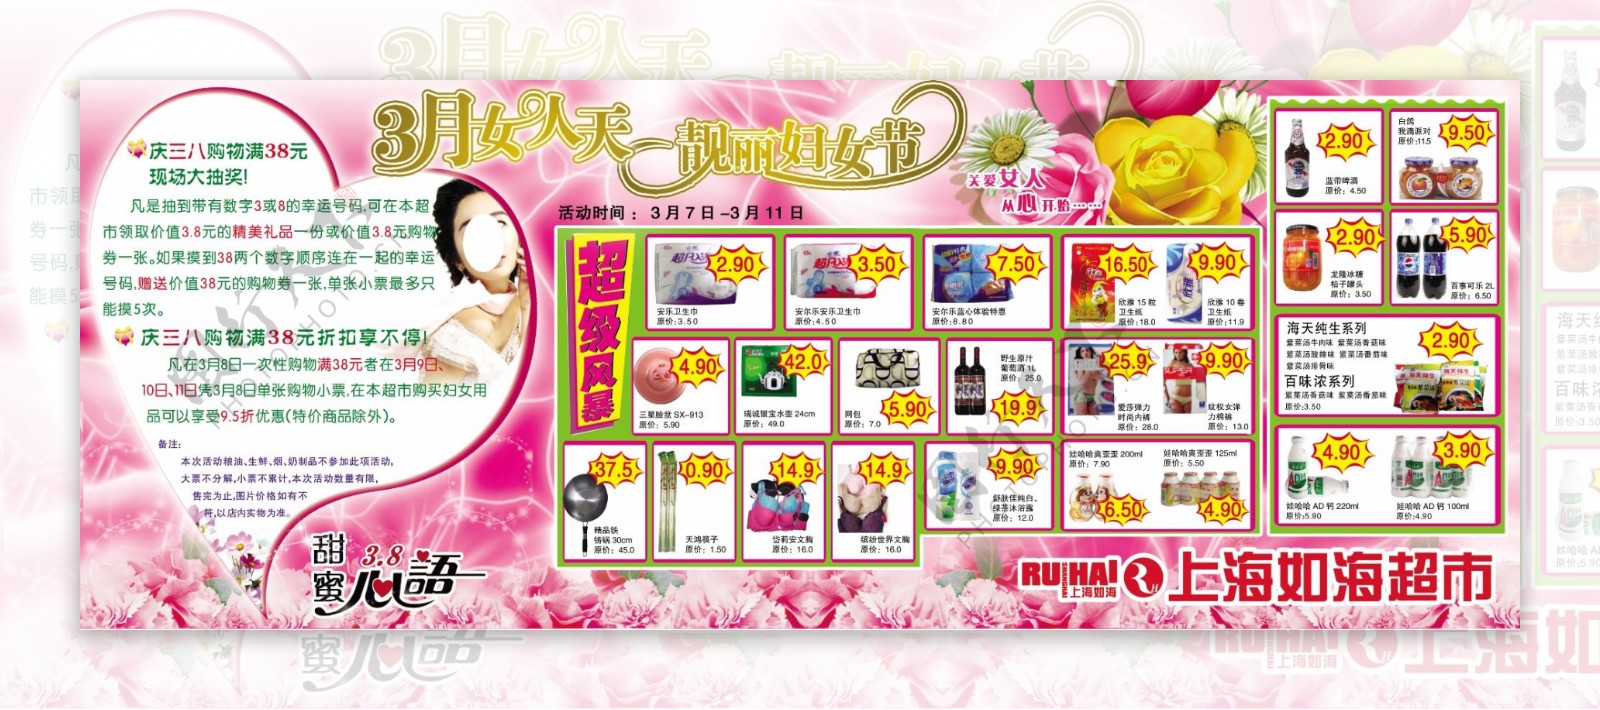 妇女节超市特价活动宣传单图片